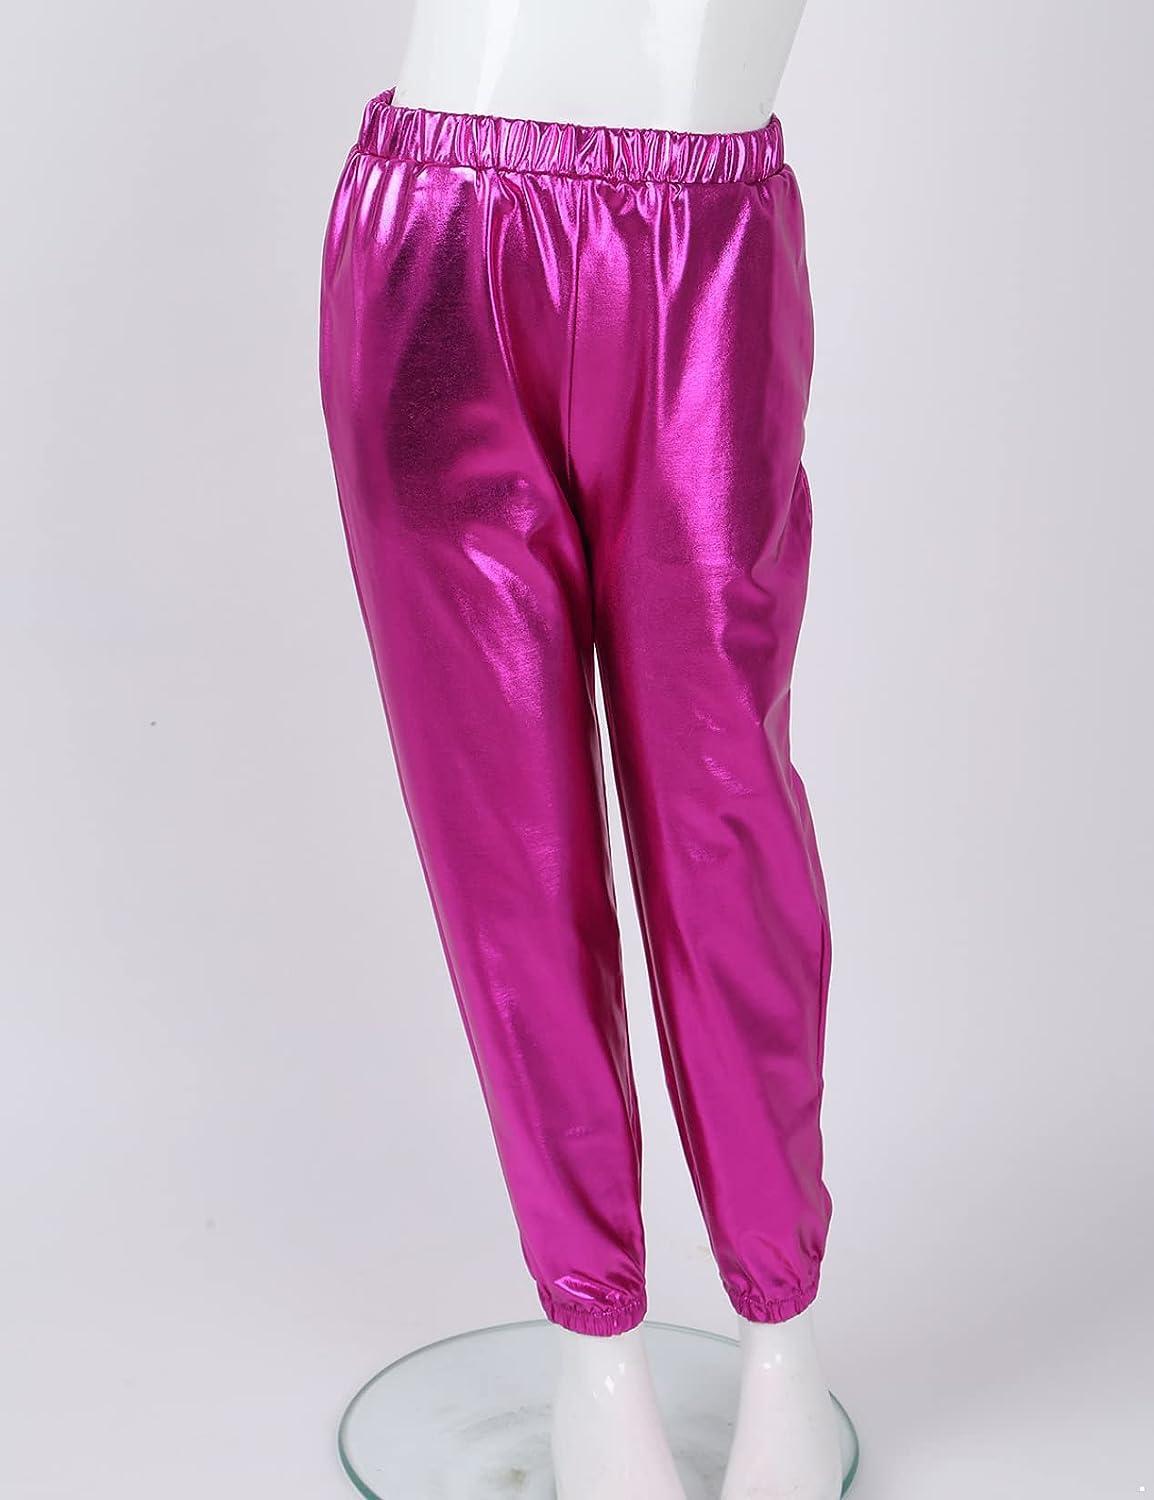 Pink Boys Dance Pants (SPANDEX) - 200+ Colors